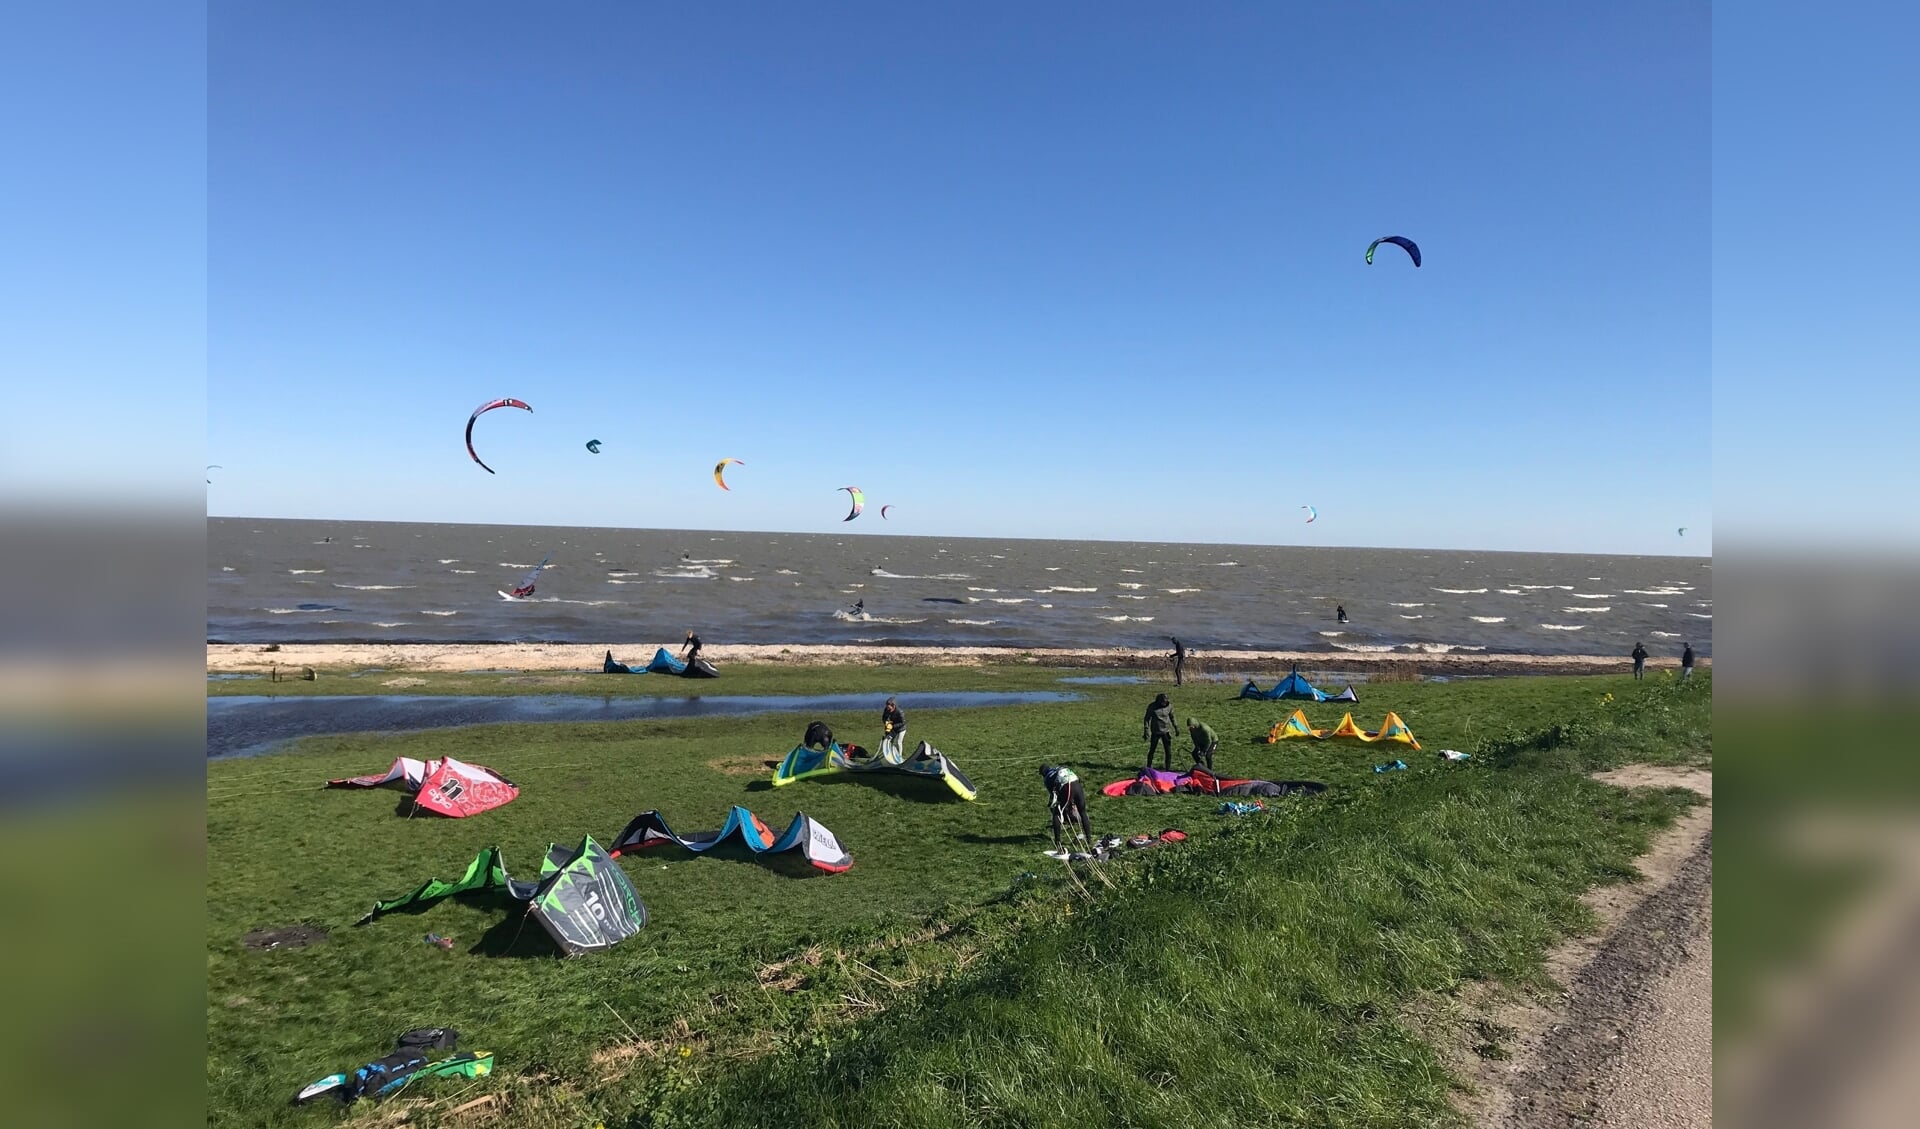 Vele kitesurfers op de gouwzee maakten dankbaar gebruik van de krachtige wind en dit resulteerde in een aanzicht met diverse gekleurde 'kites' aan een tamelijk stralend blauwe hemel. 